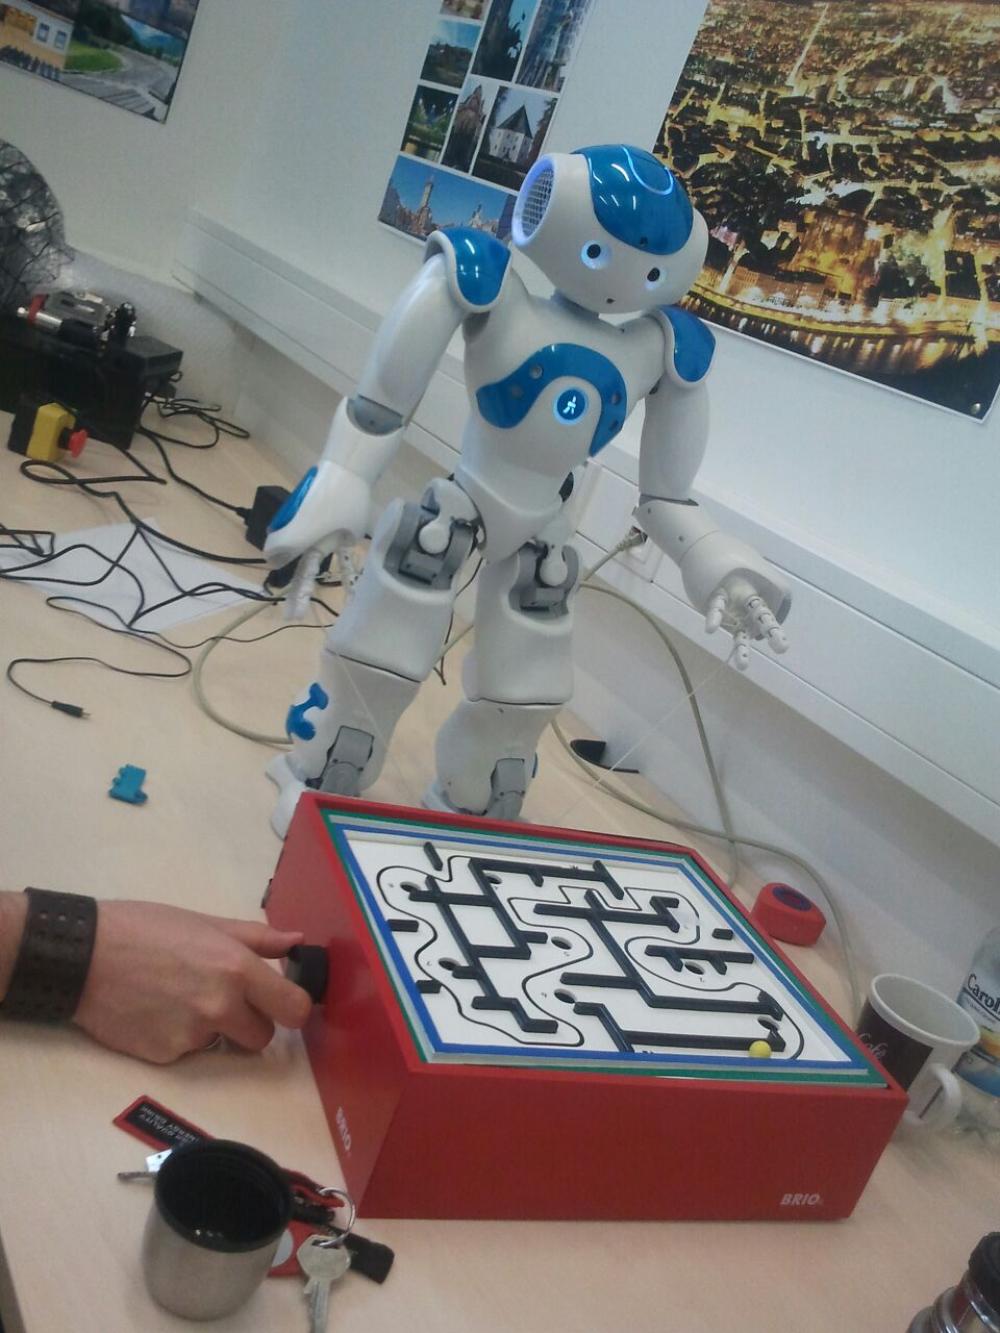 Cooperative ballmaze game with Nao robot.